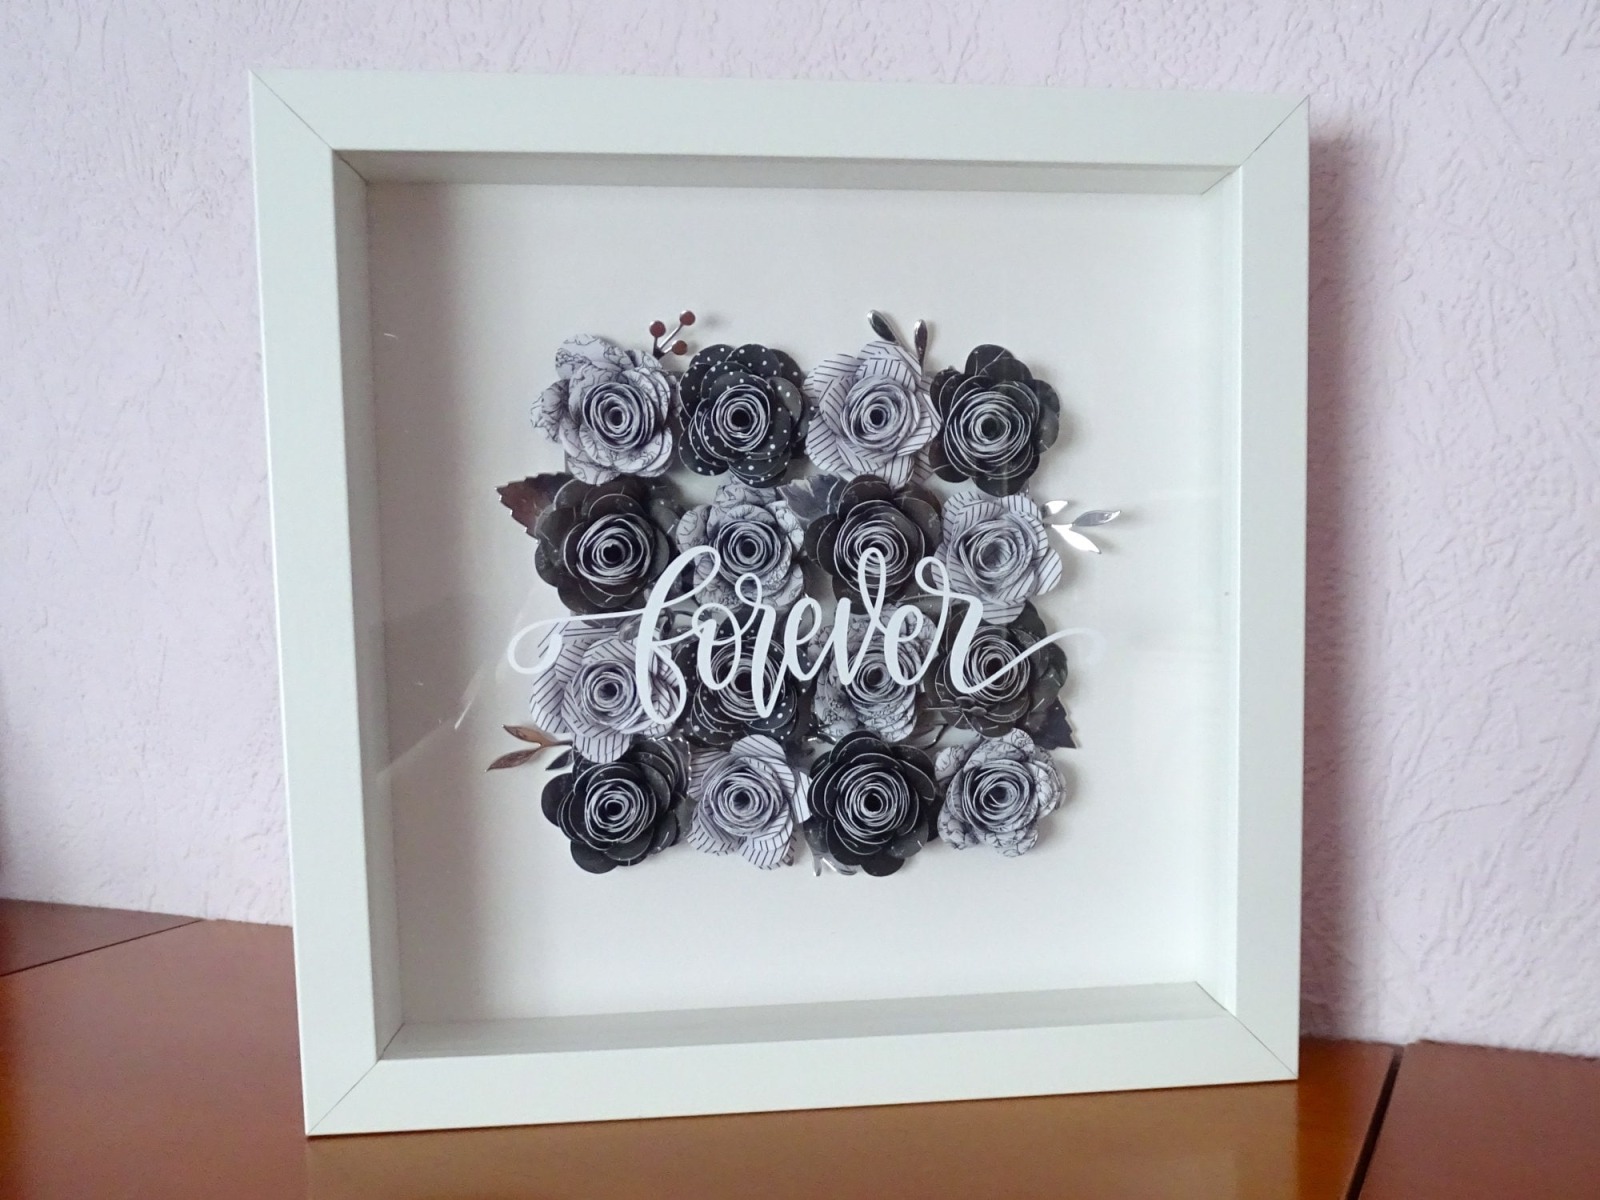 3D-Bilderrahmen Rosen in schwarz-weiß-silber - forever - Geschenk Valentinstag - Hochzeit - Dekorat